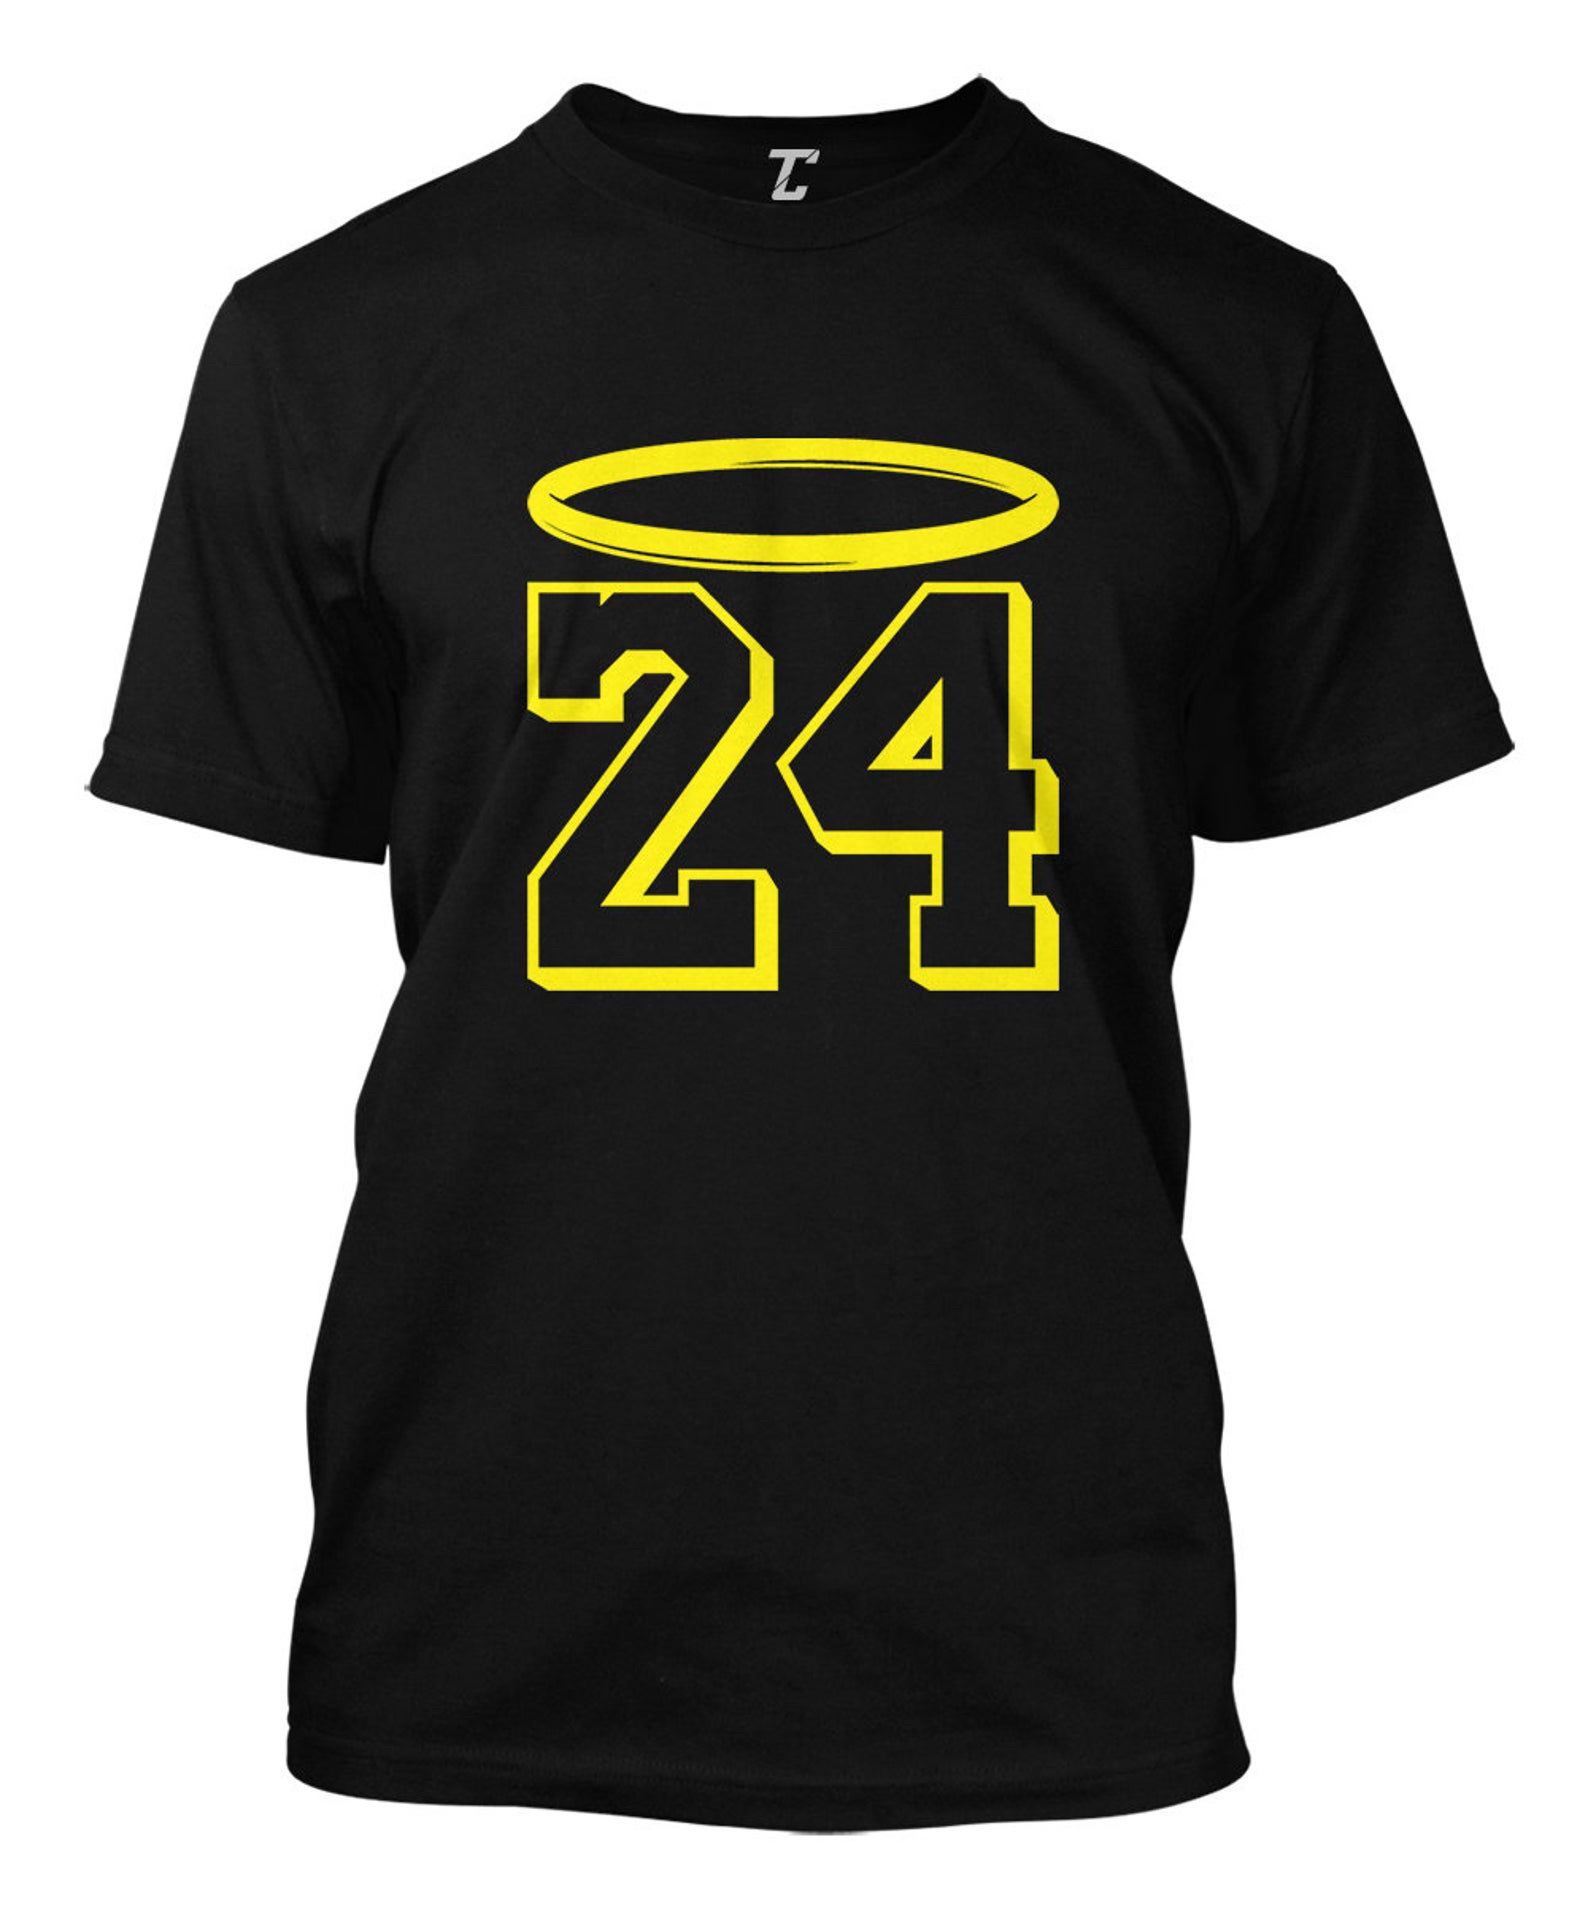 Los Angeles Lakers Kobe Bryant Black Mamba 24 LA NBA Basketball Tshirt T Shirt